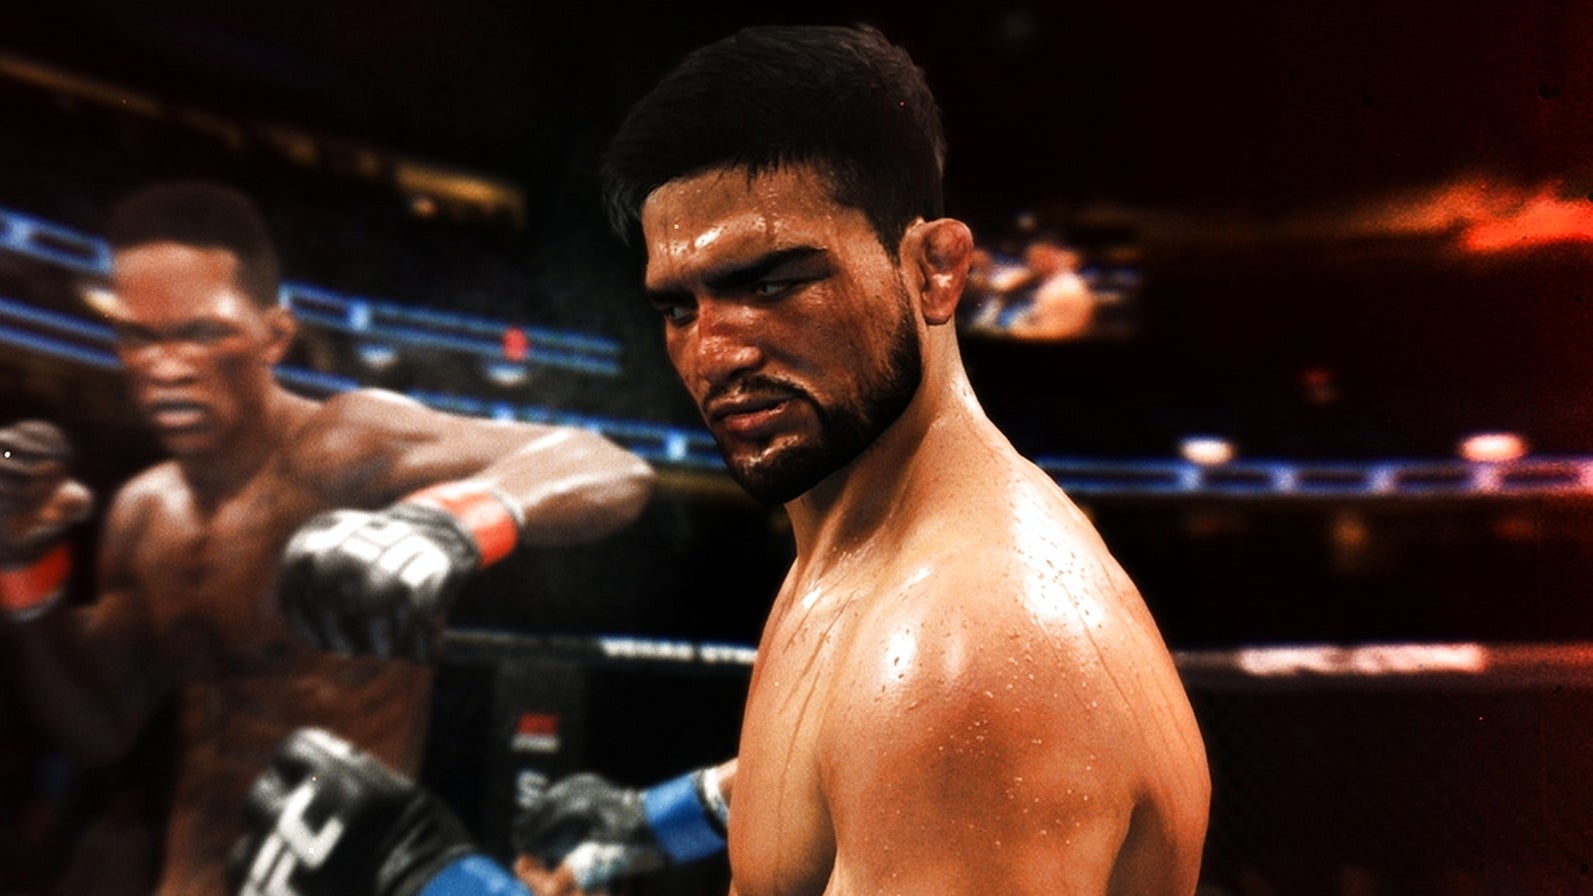 Bilder zu EA Sports UFC 4 Test - Endlich ein Champion!